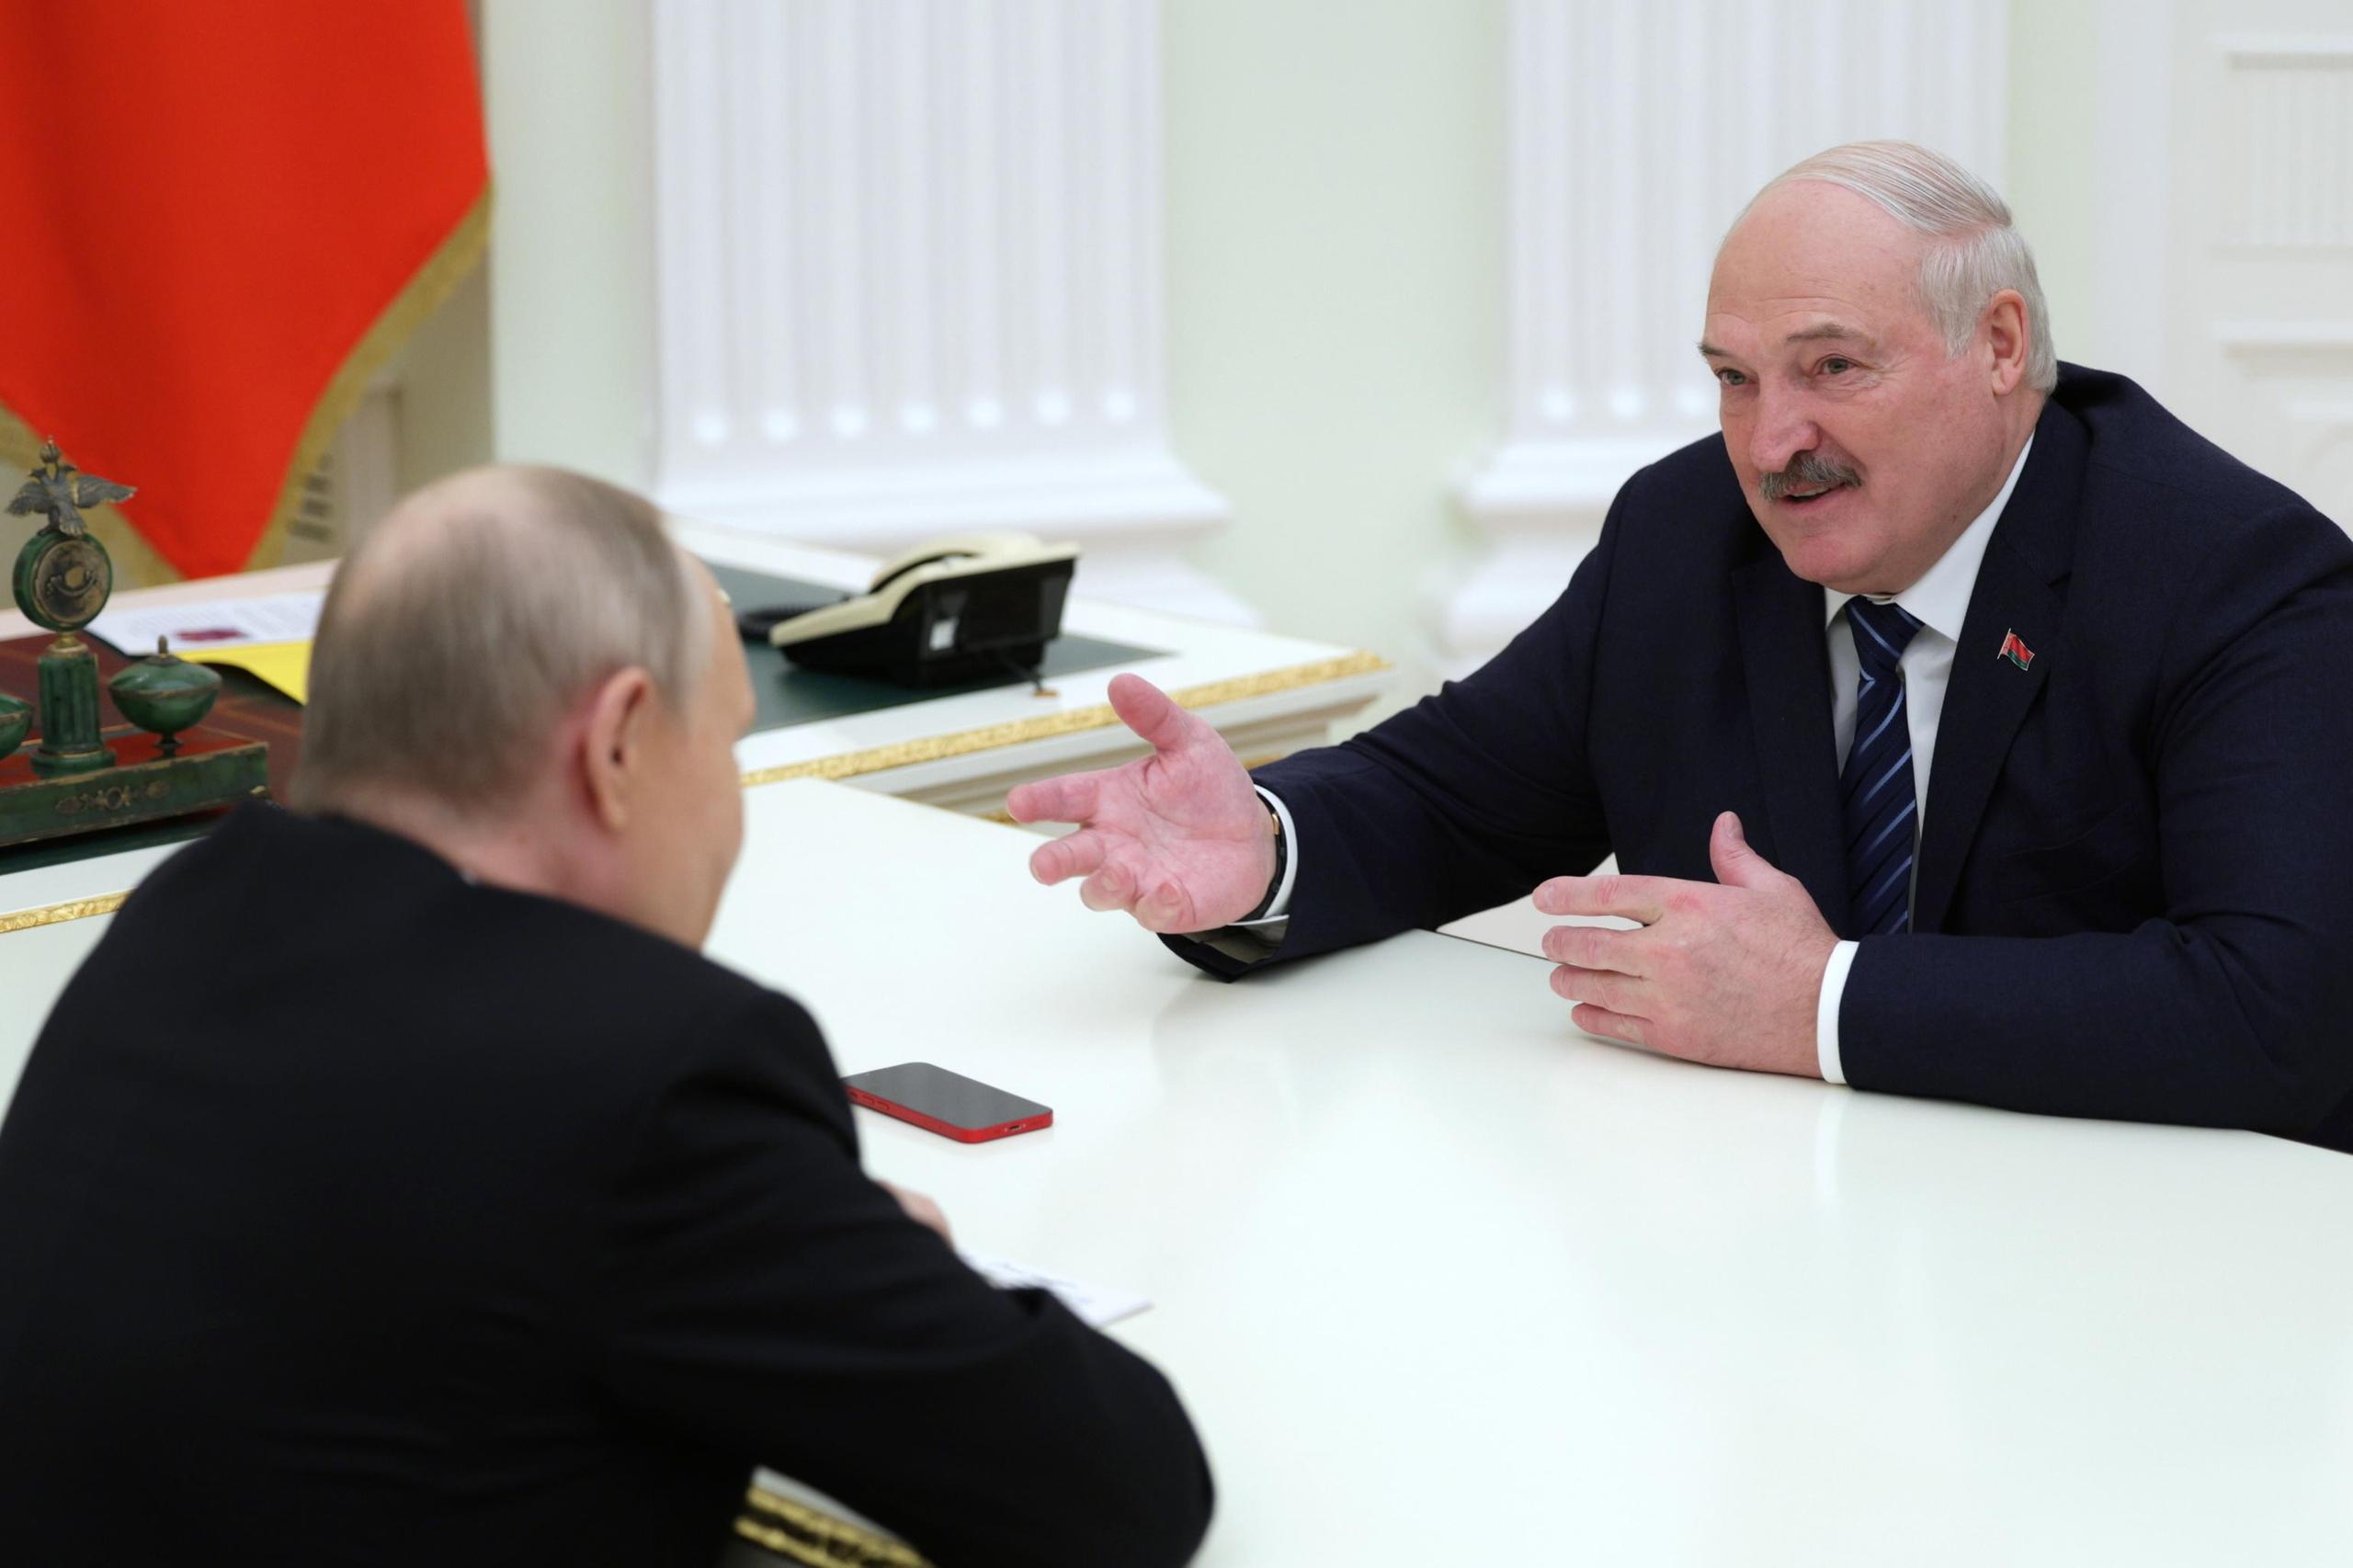 Bielorussia schierate